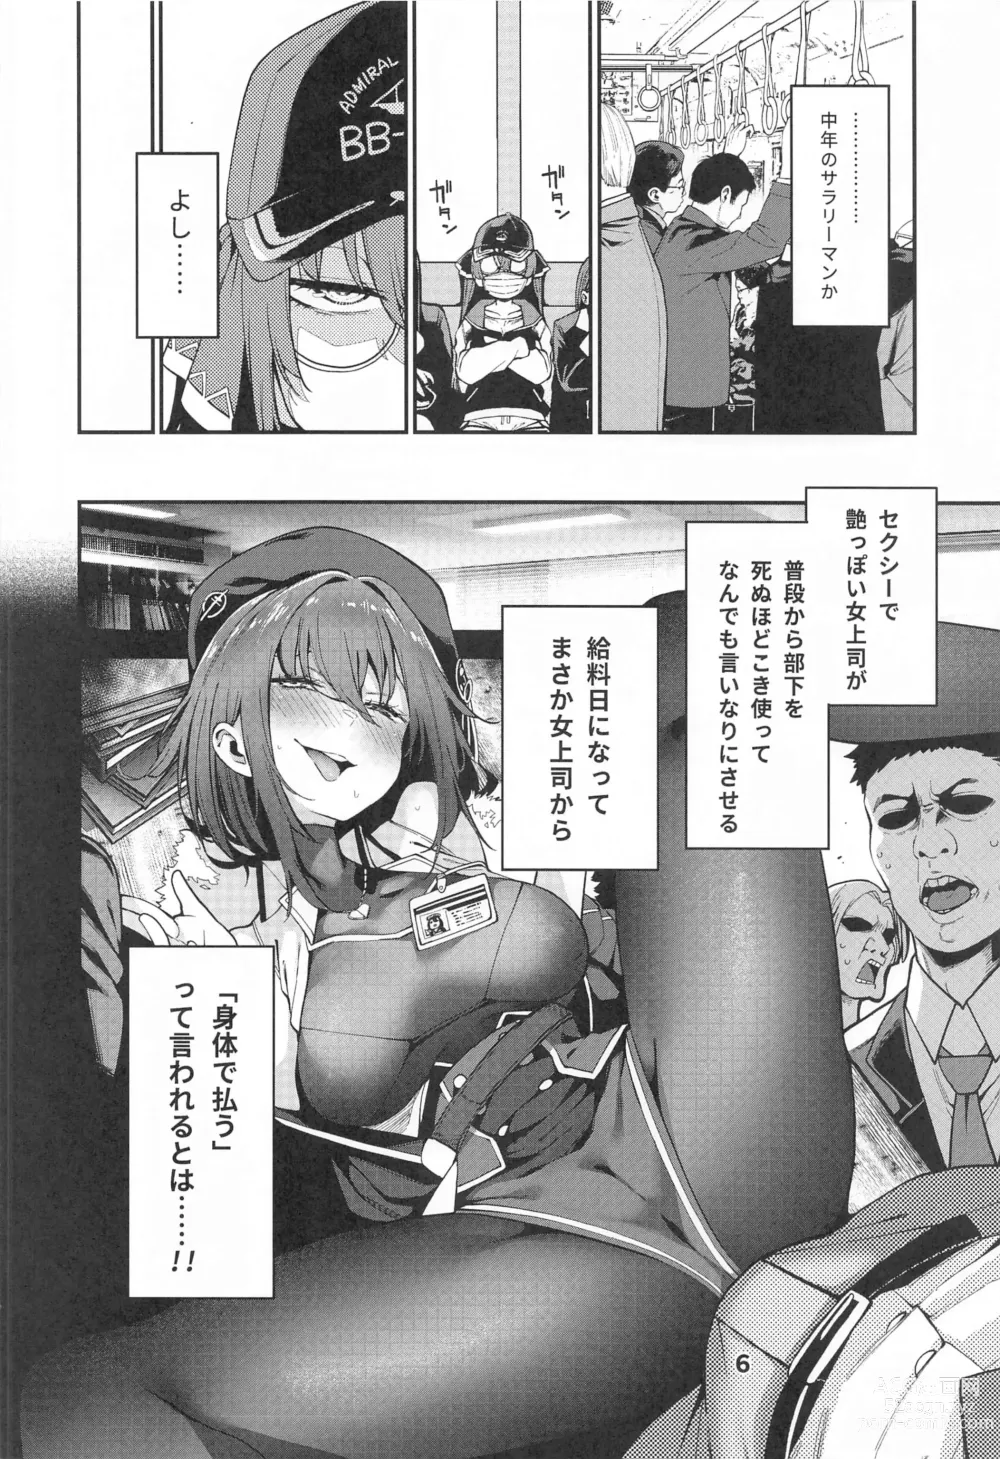 Page 7 of doujinshi Houshou no Shota Ichimi Mousou Gekijou